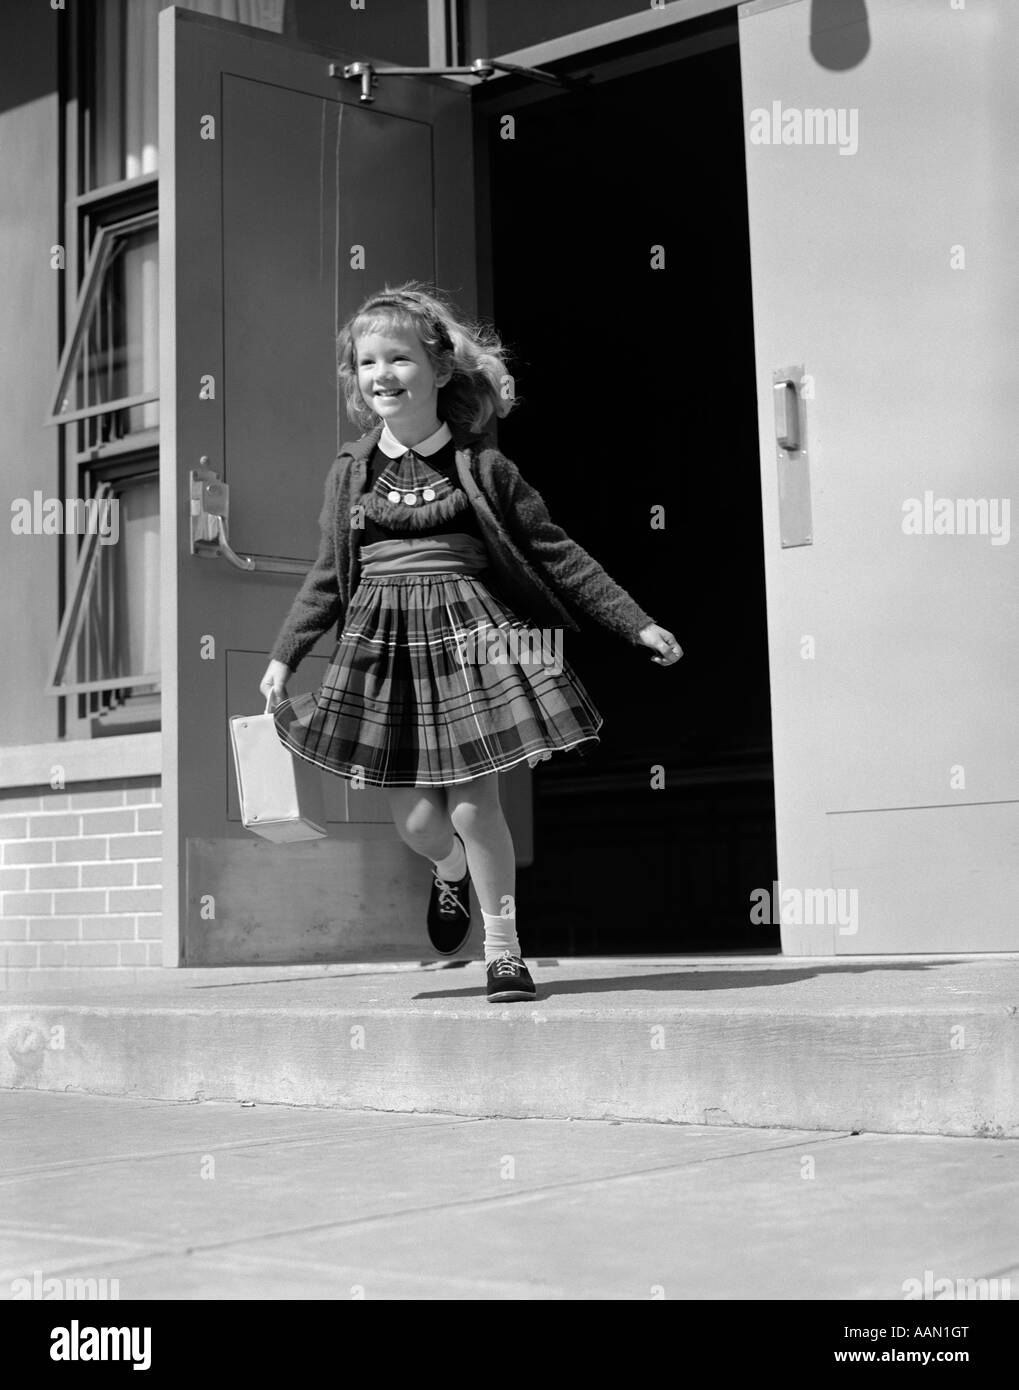 Années 1950 Années 1960 fille blonde COURT PORTE AVANT DU BÂTIMENT DE L'ÉCOLE TENUE LUNCH BOX OU SAC pull robe à carreaux SMILING Banque D'Images